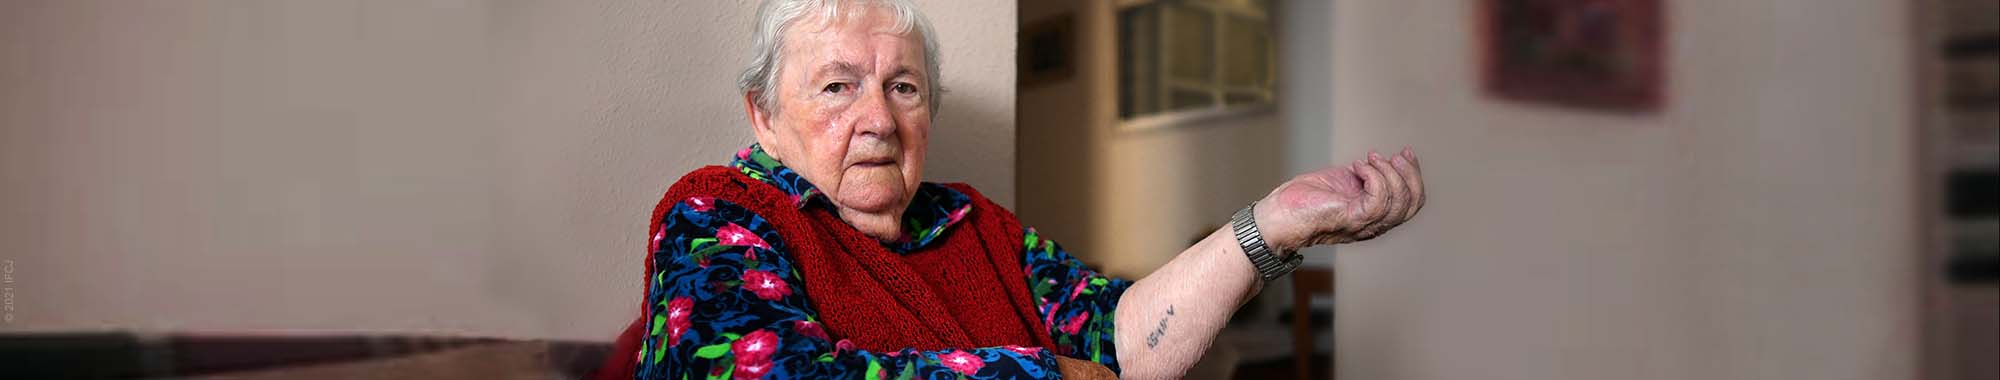 Elderly holocaust survivor sitting and showing her tattoo